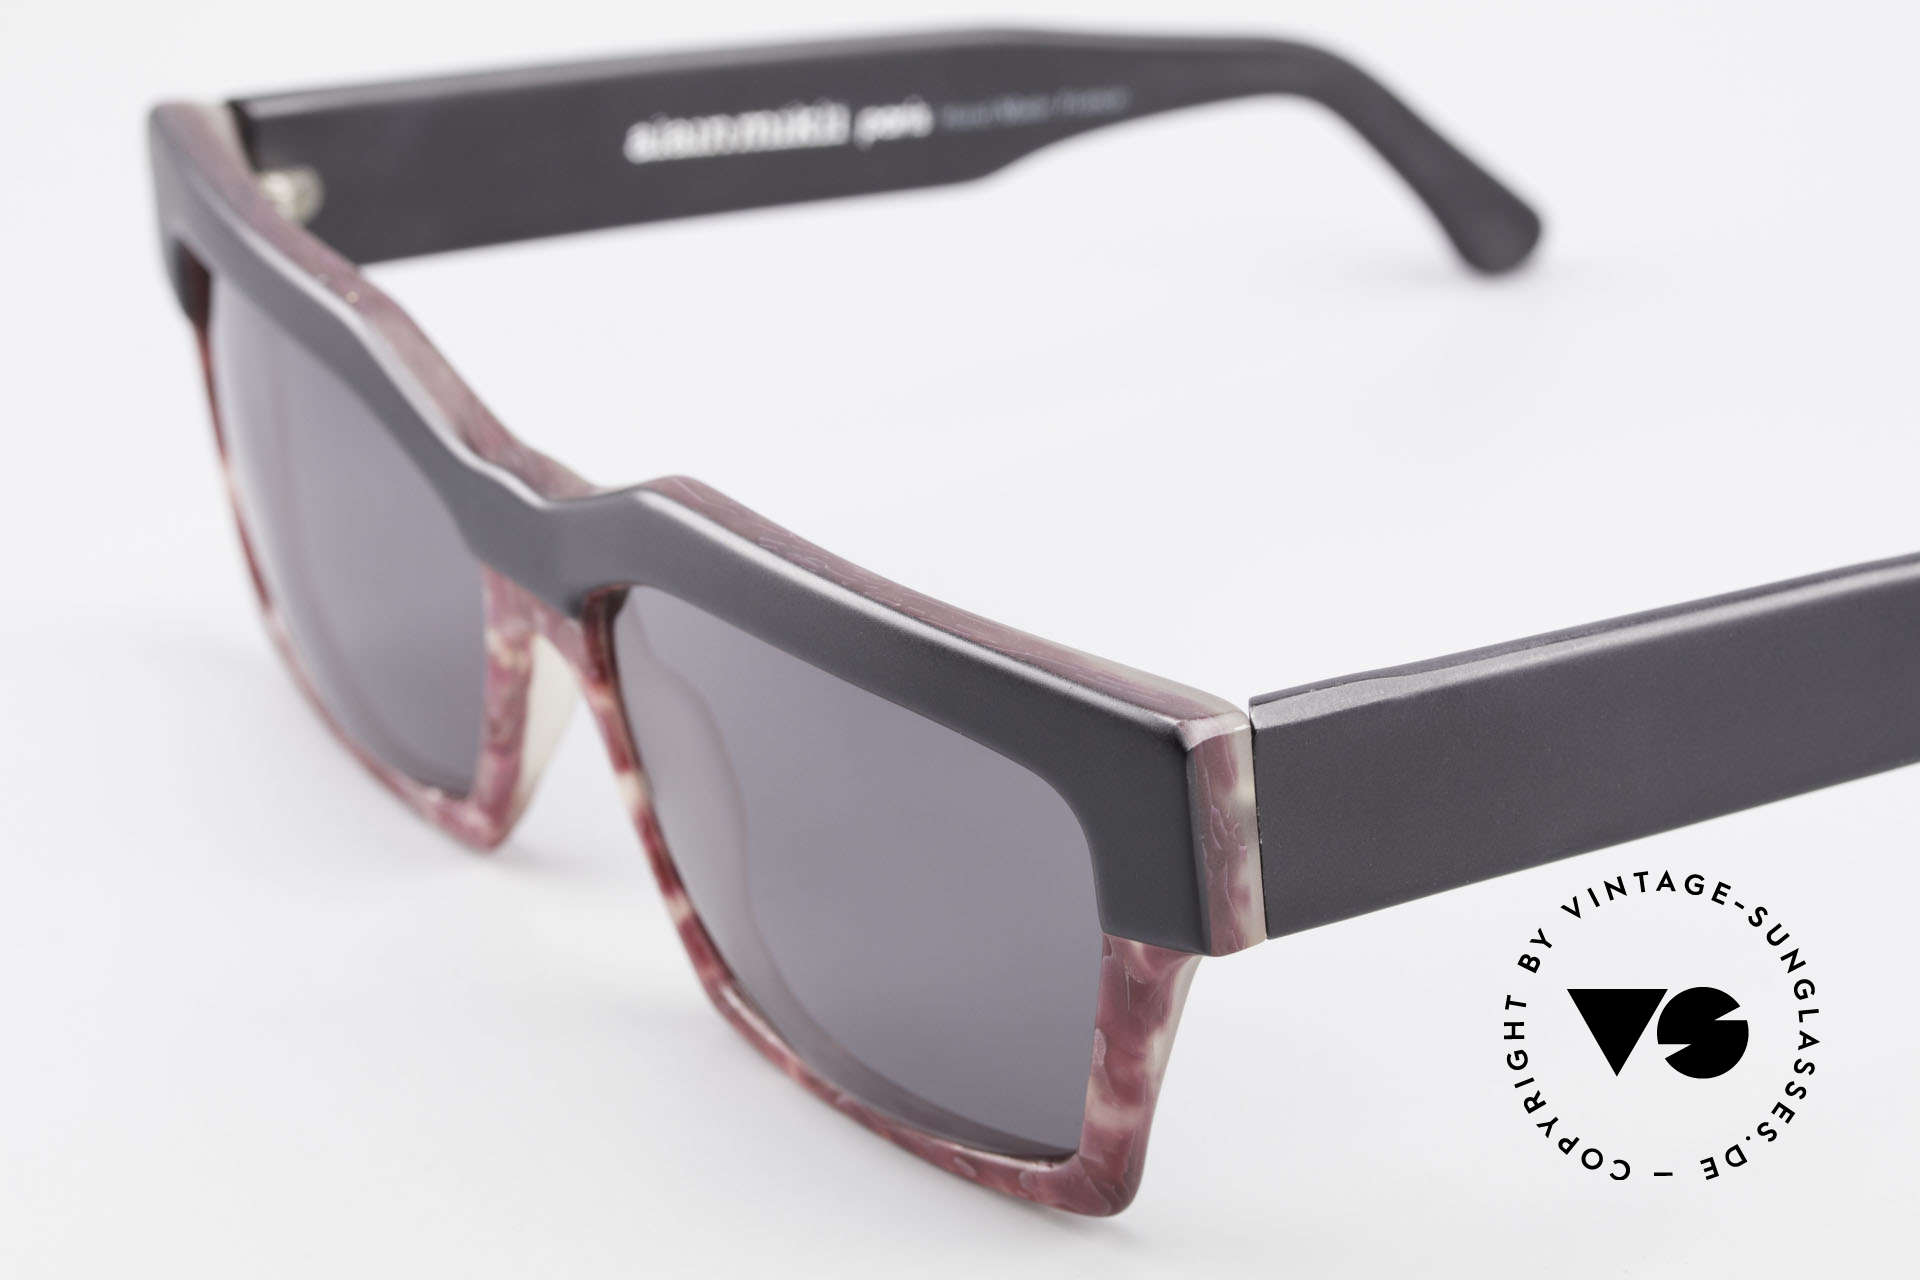 Alain Mikli 318 / 423 XL 80er Designer Sonnenbrille, überdimensionierte Rahmen ist einfach ein Hingucker, Passend für Damen